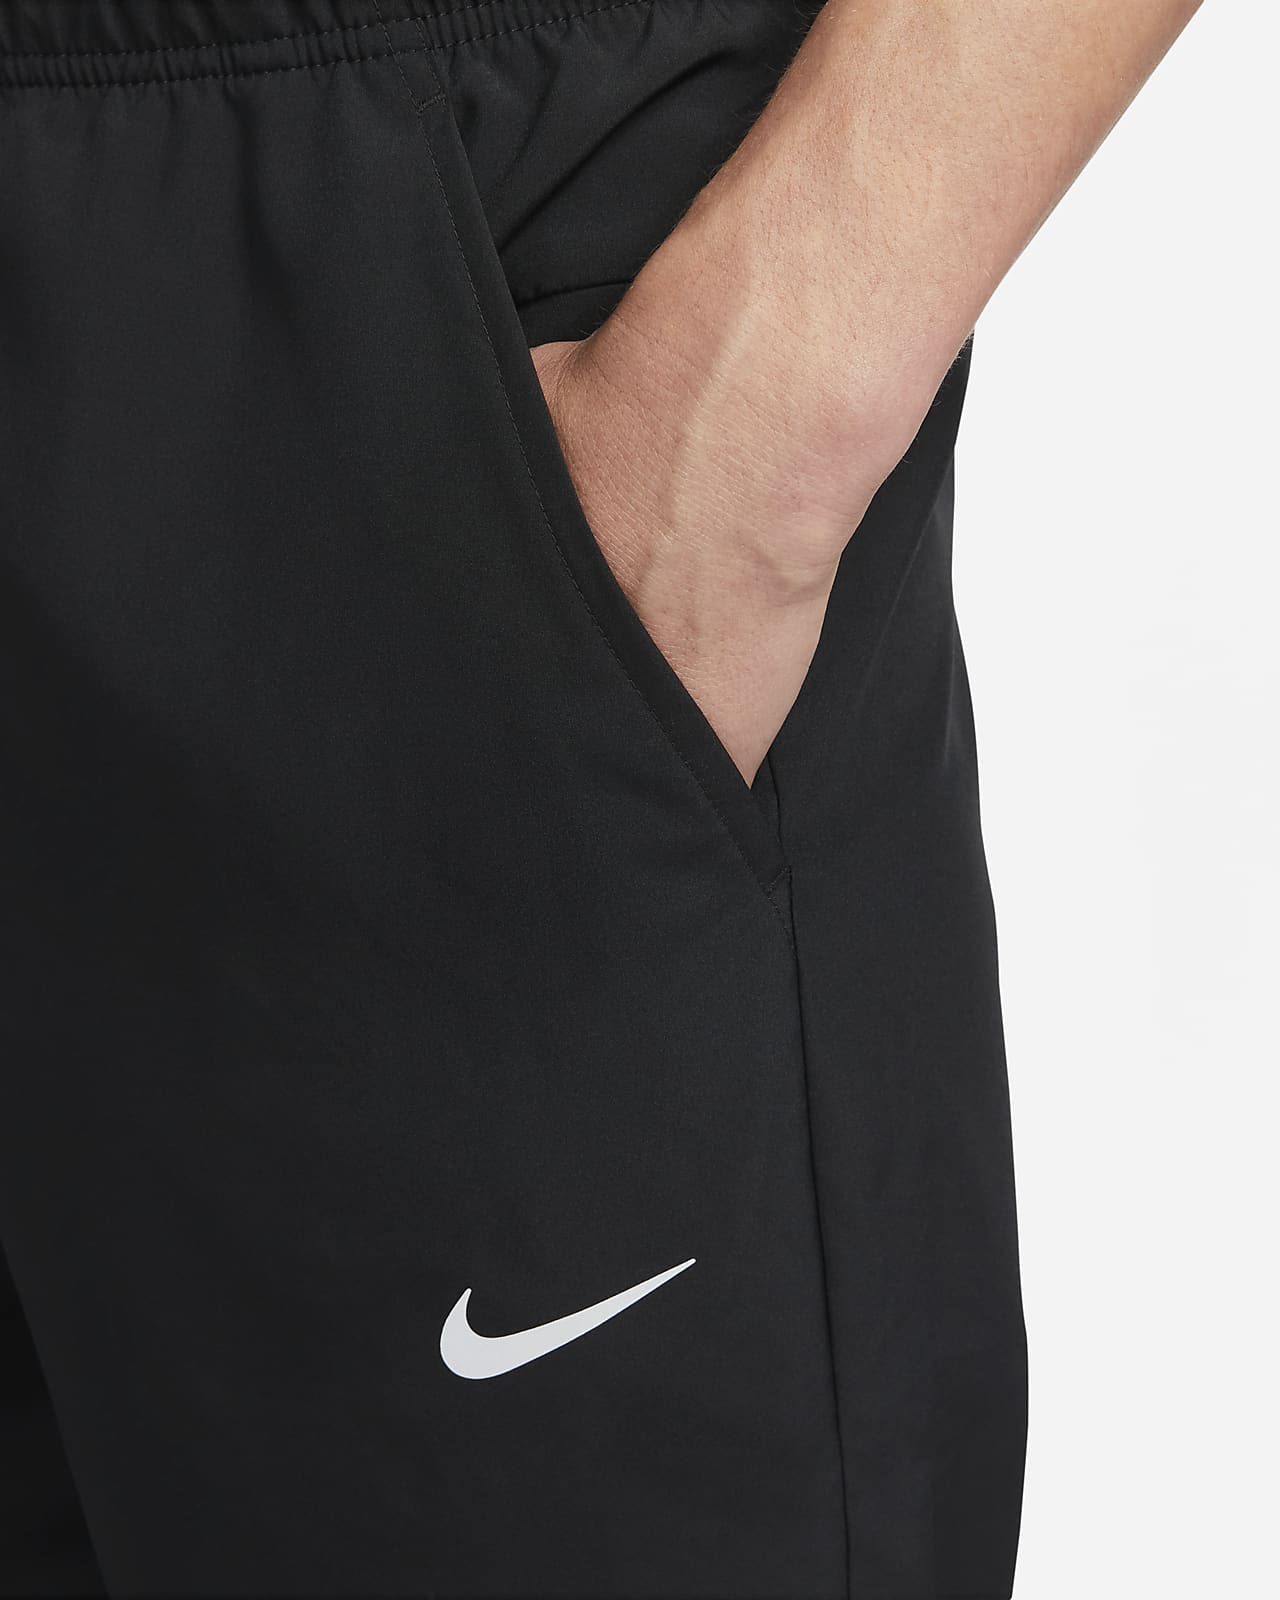 Nike ルーズ ナイロン パンツ トレーニング カニエ スタイル 黒 XL ②